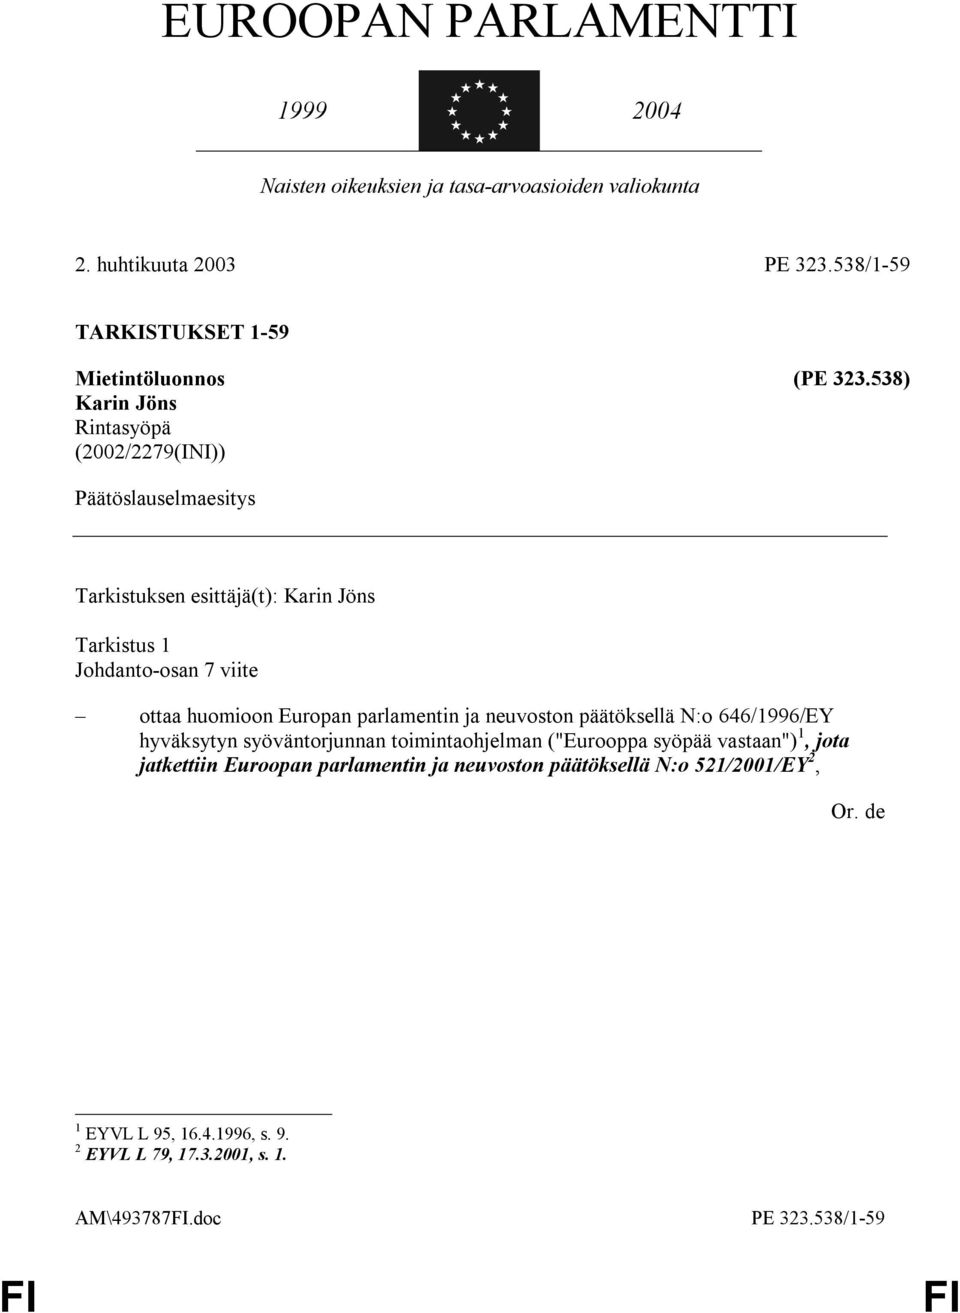 538) Karin Jöns Rintasyöpä (2002/2279(INI)) Päätöslauselmaesitys Tarkistuksen esittäjä(t): Karin Jöns Tarkistus 1 Johdanto-osan 7 viite ottaa huomioon